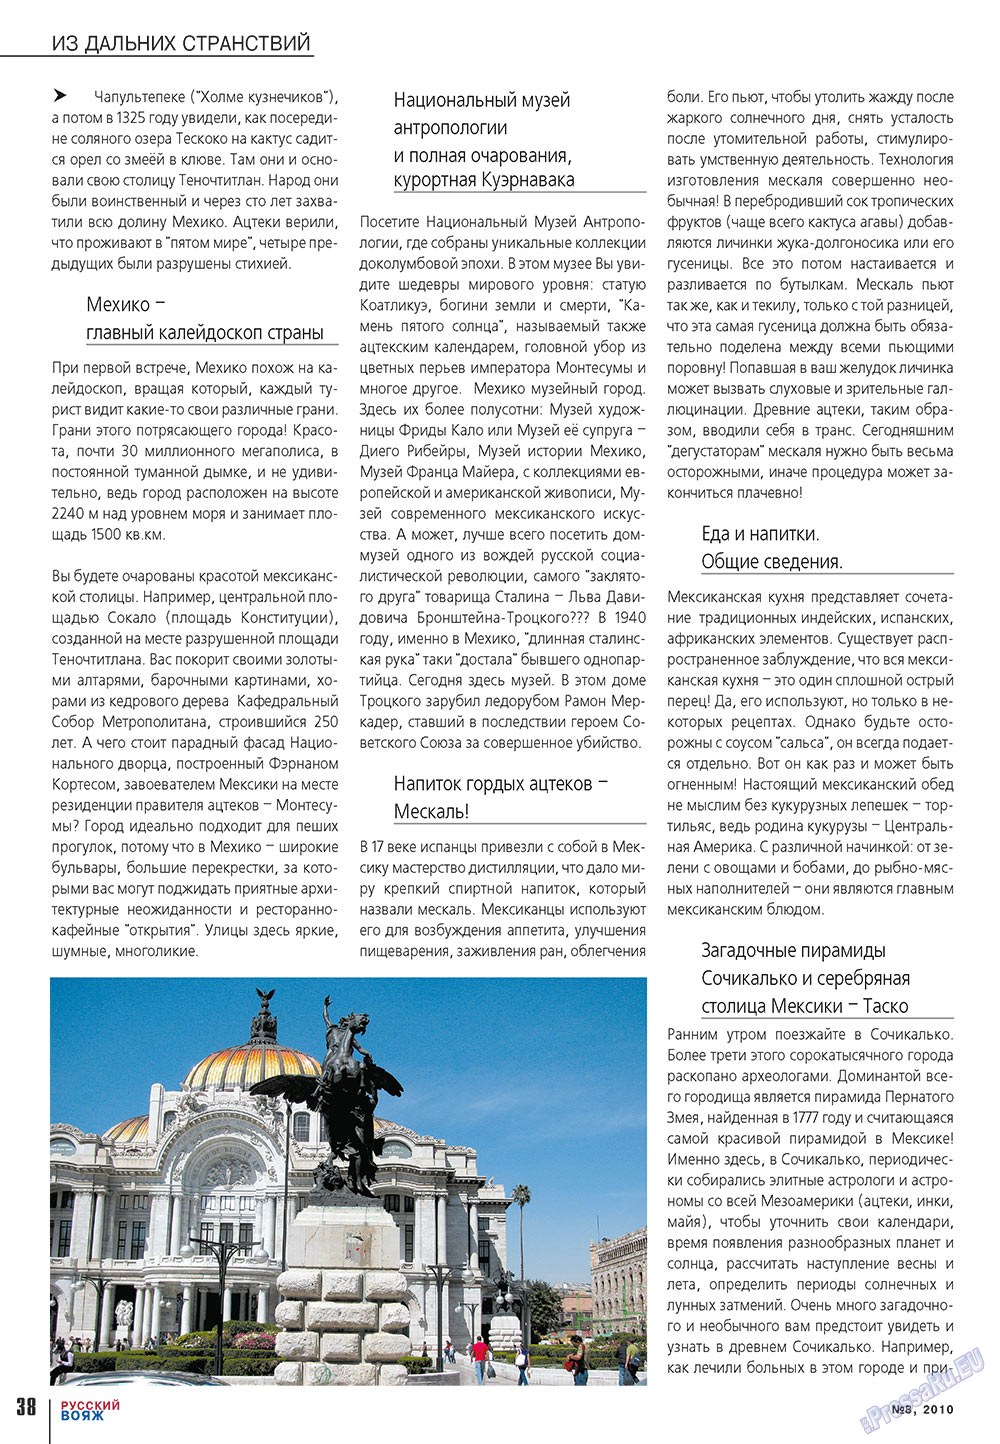 Русский вояж (журнал). 2010 год, номер 8, стр. 38